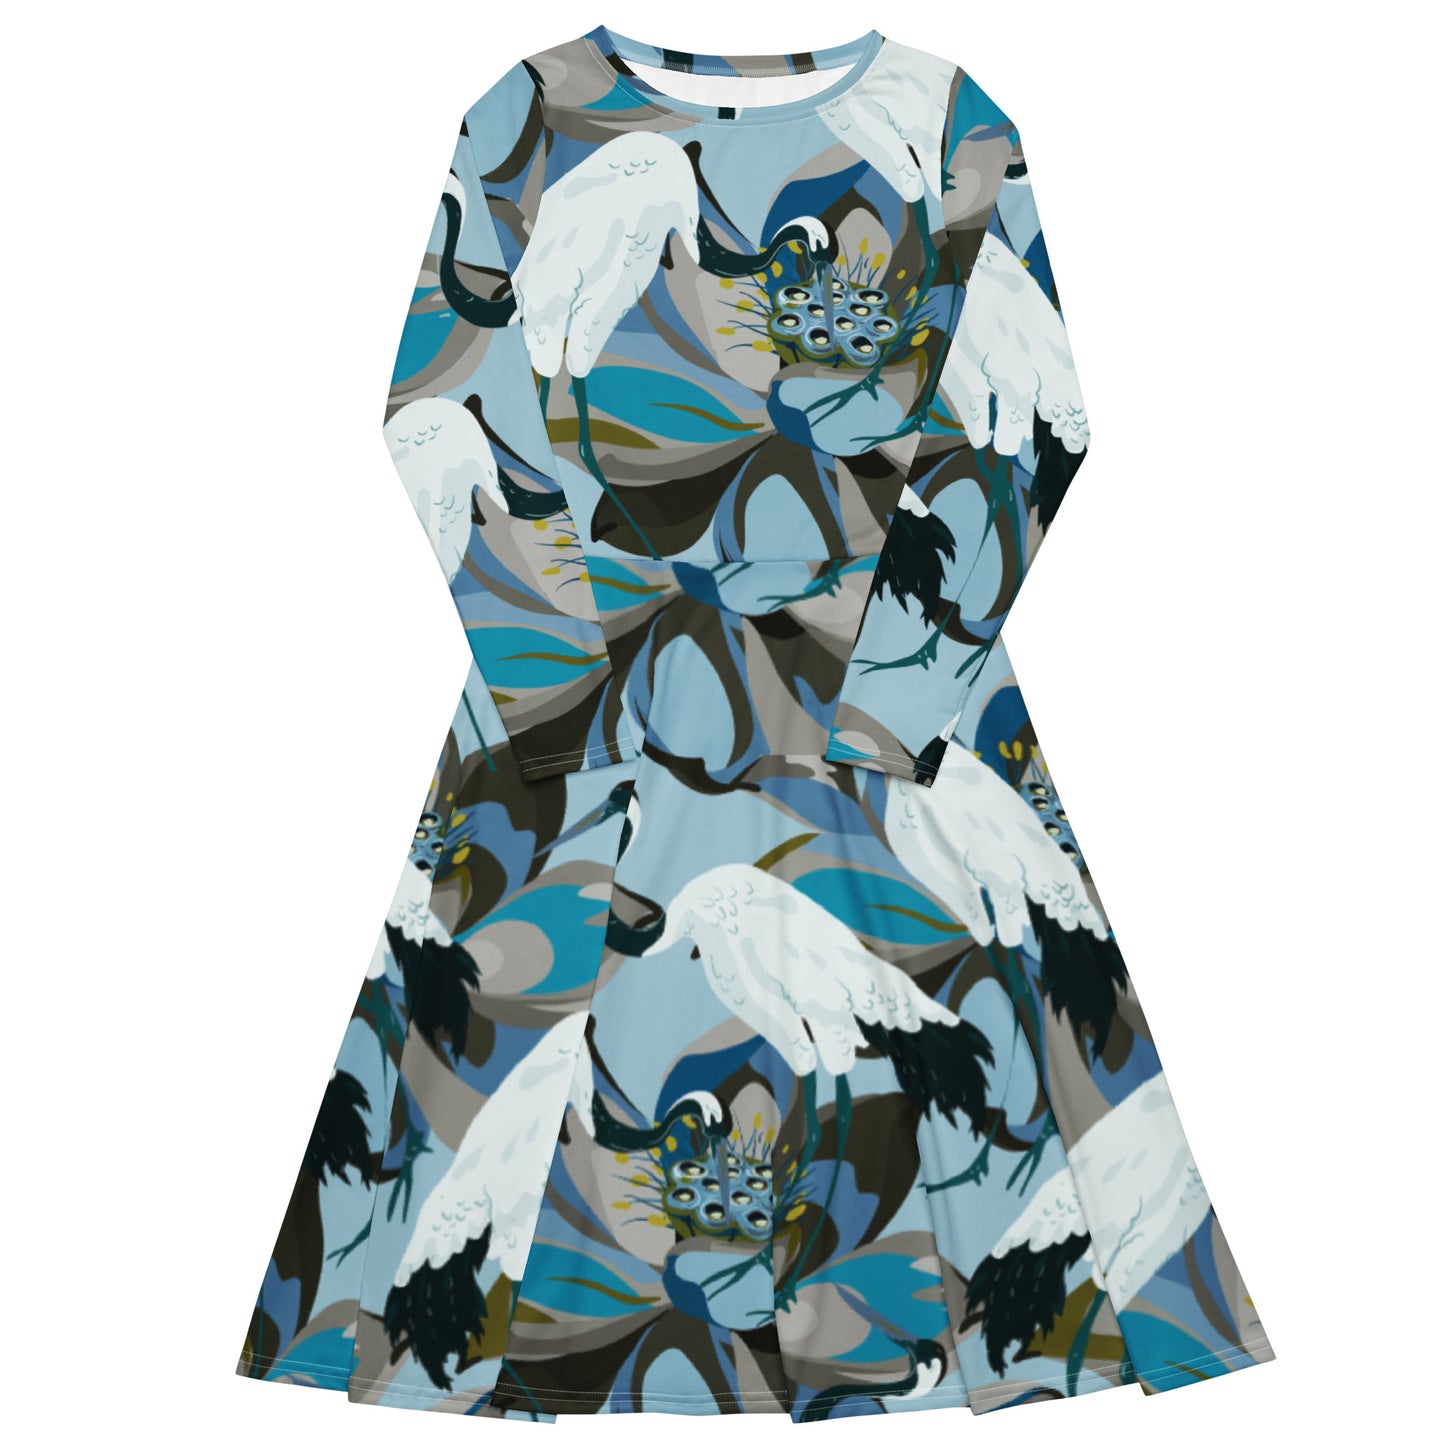 Kurki (Crane) - Long sleeve midi dress - Dresses- Print N Stuff - [designed in Turku FInland]